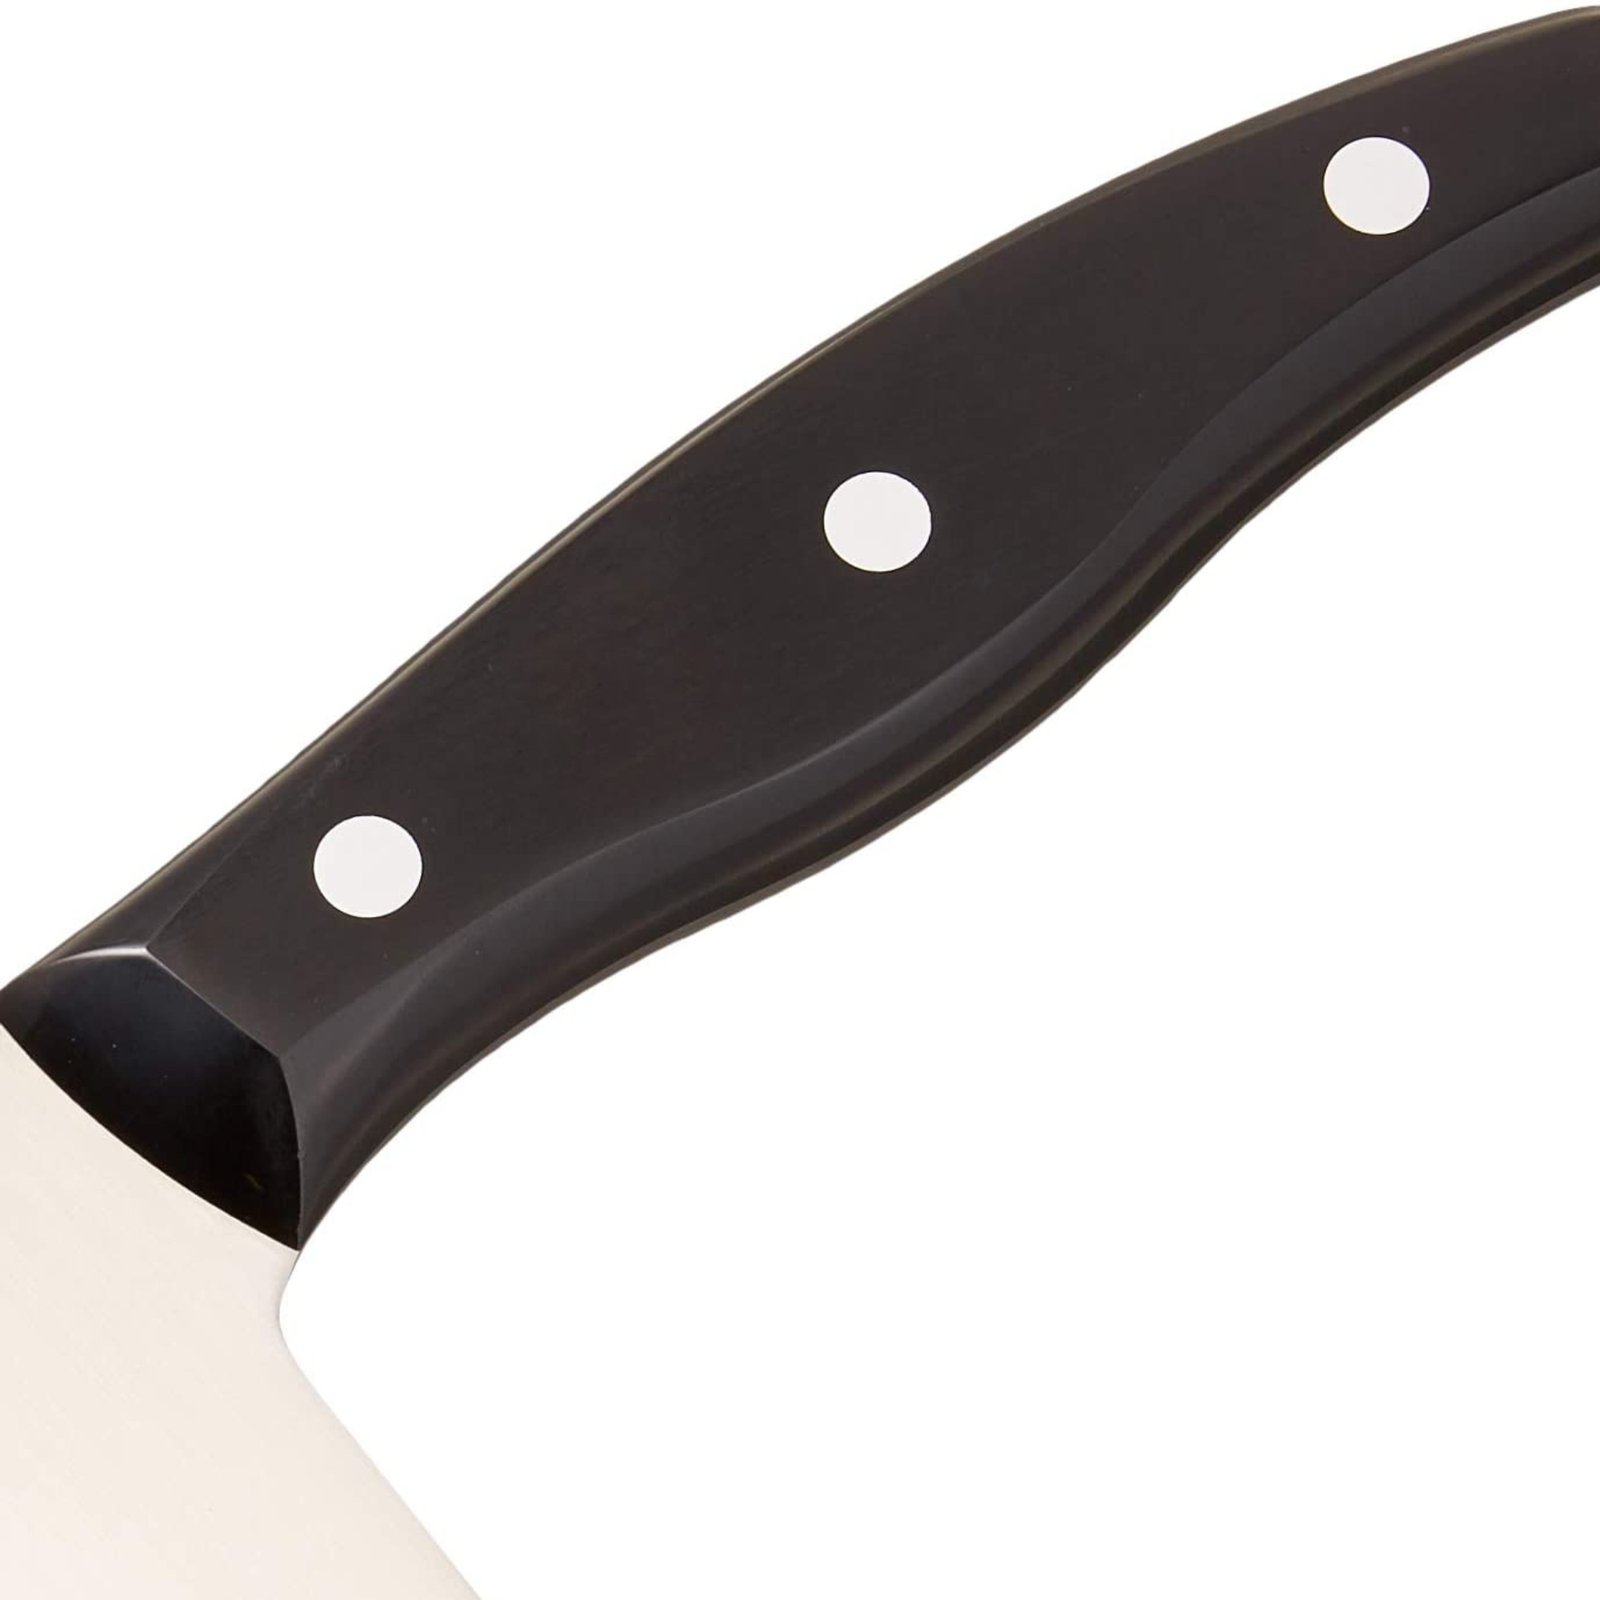 cleaver knife 7 inch.jpgcleaver knife 7 inch.jpg